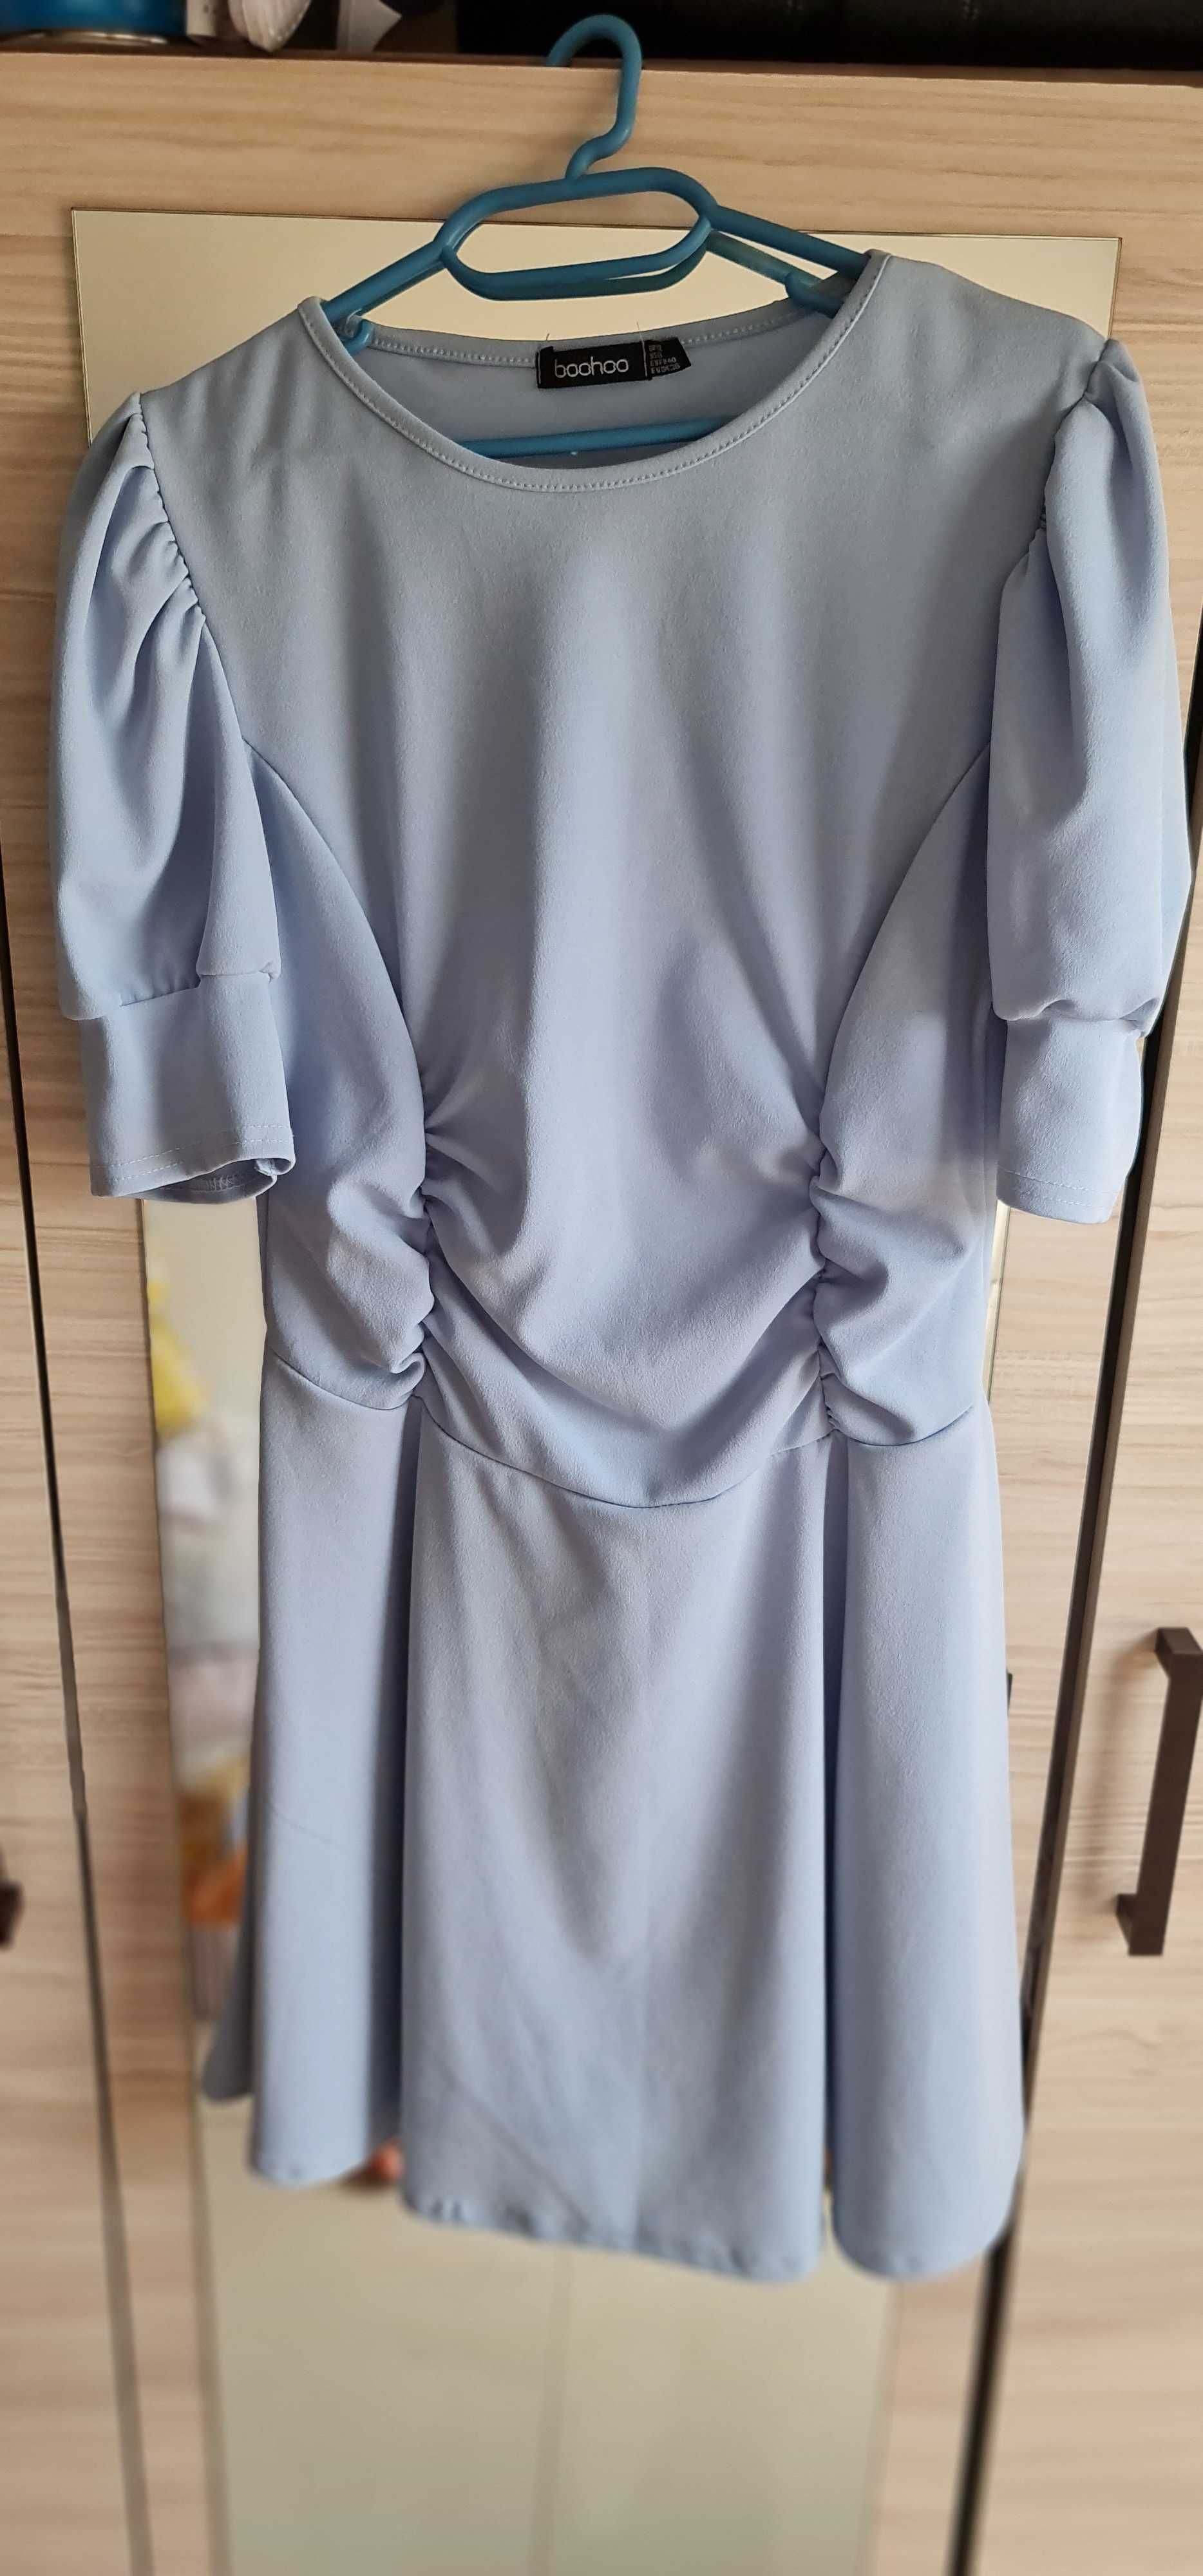 Къса рокля Boohoo - рр UK12, син цвят